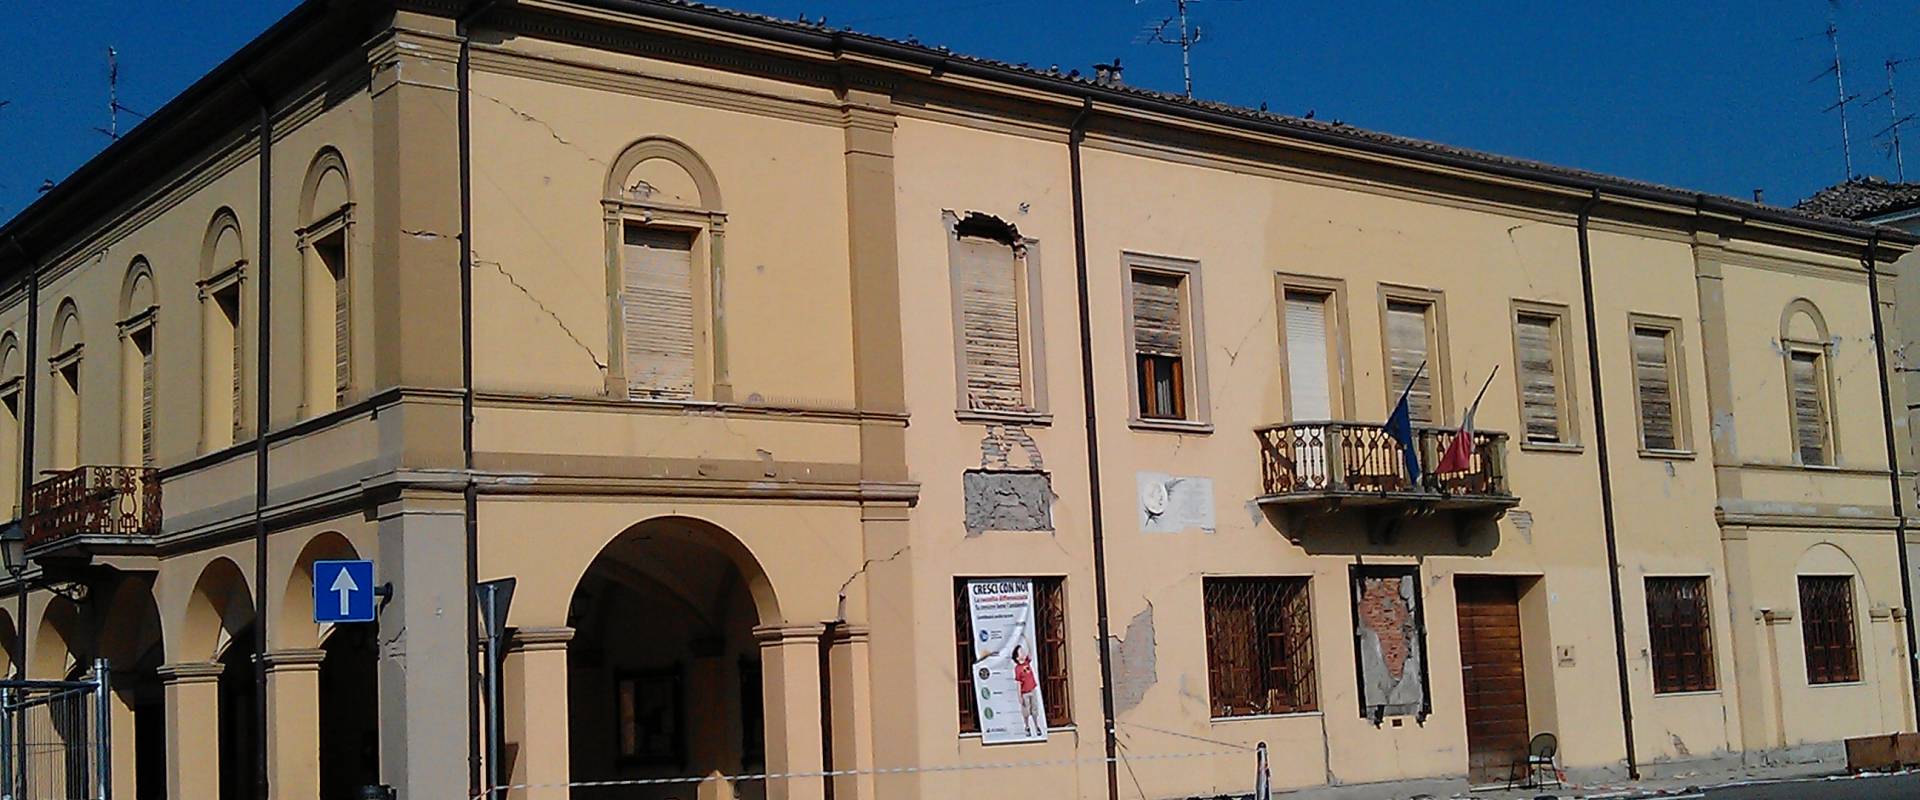 Novi di Modena, Palazzo comunale one month after the earthquake foto di Francesca Ferrari